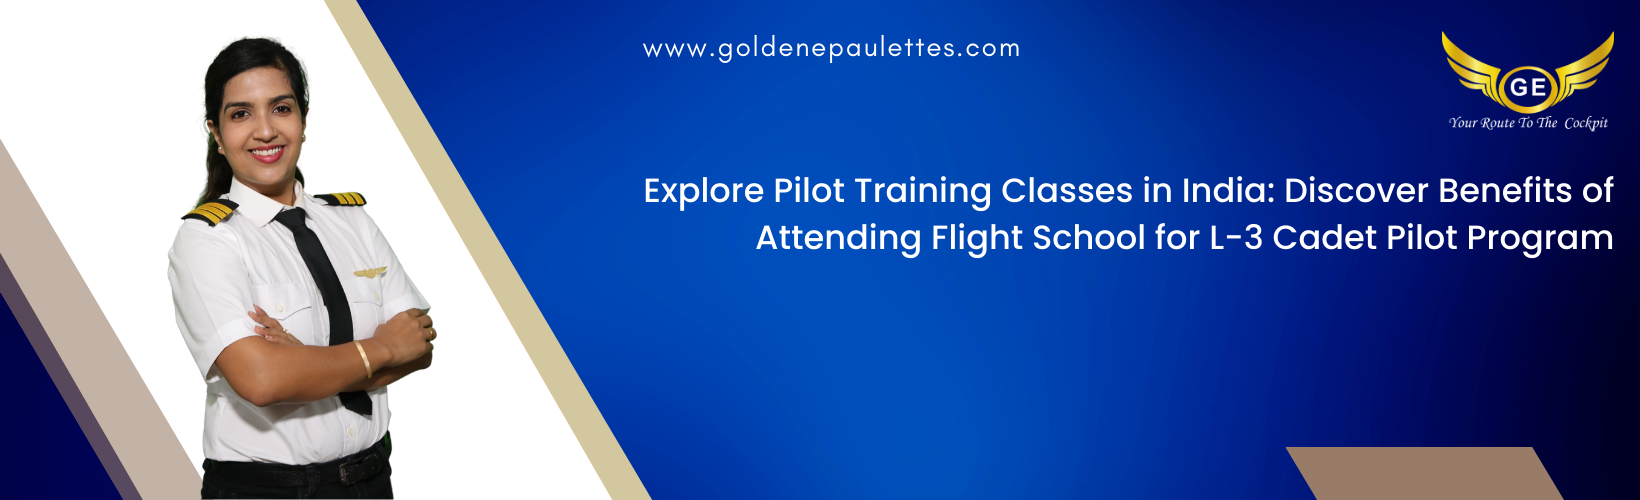 Pilot Training Classes in India